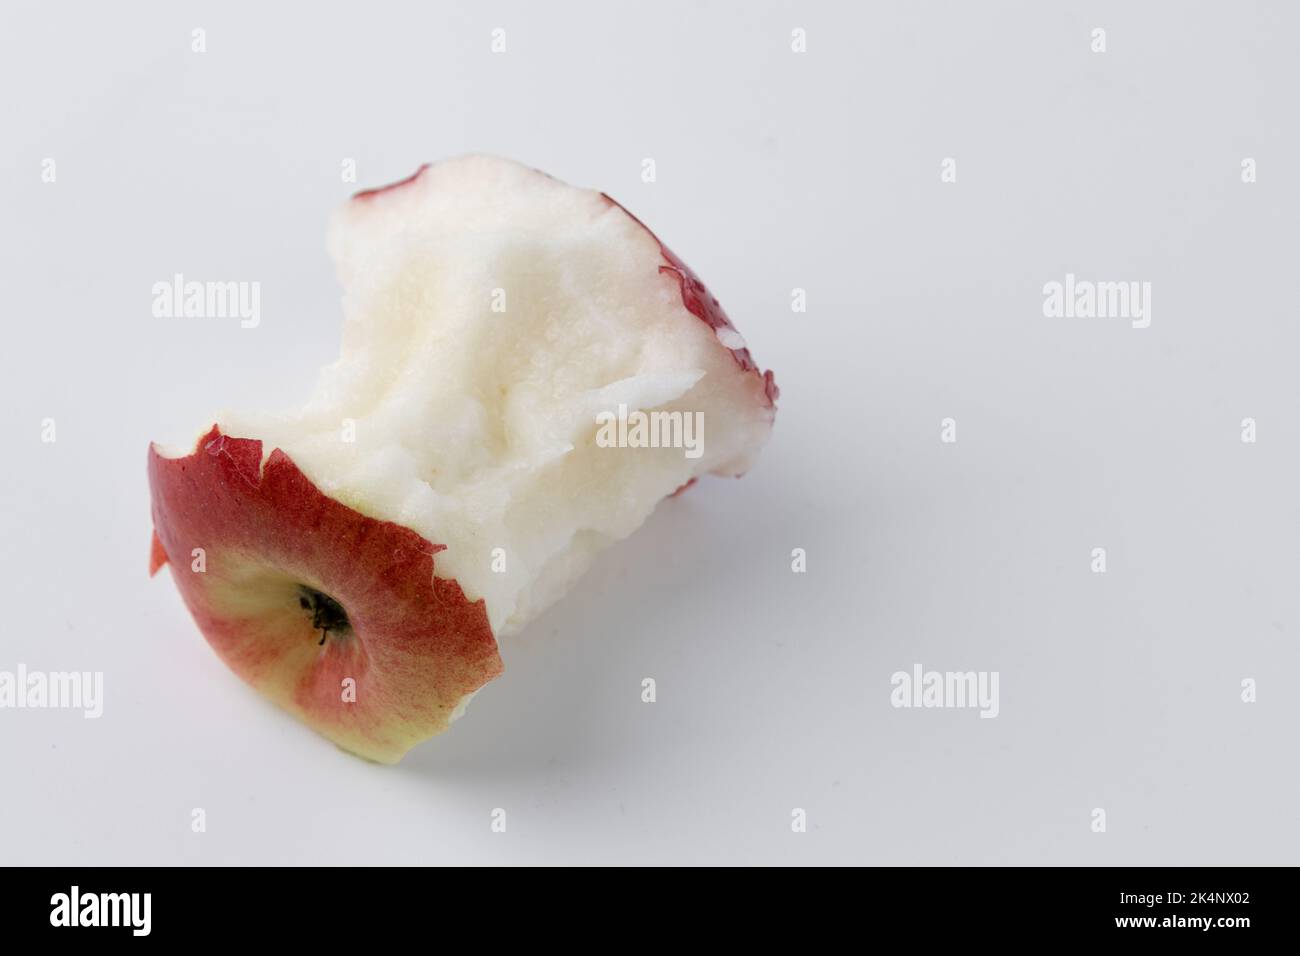 singola mela rossa mangiata fino al nocciolo isolata su fondo bianco, tronco di frutta matura su fondo bianco Foto Stock